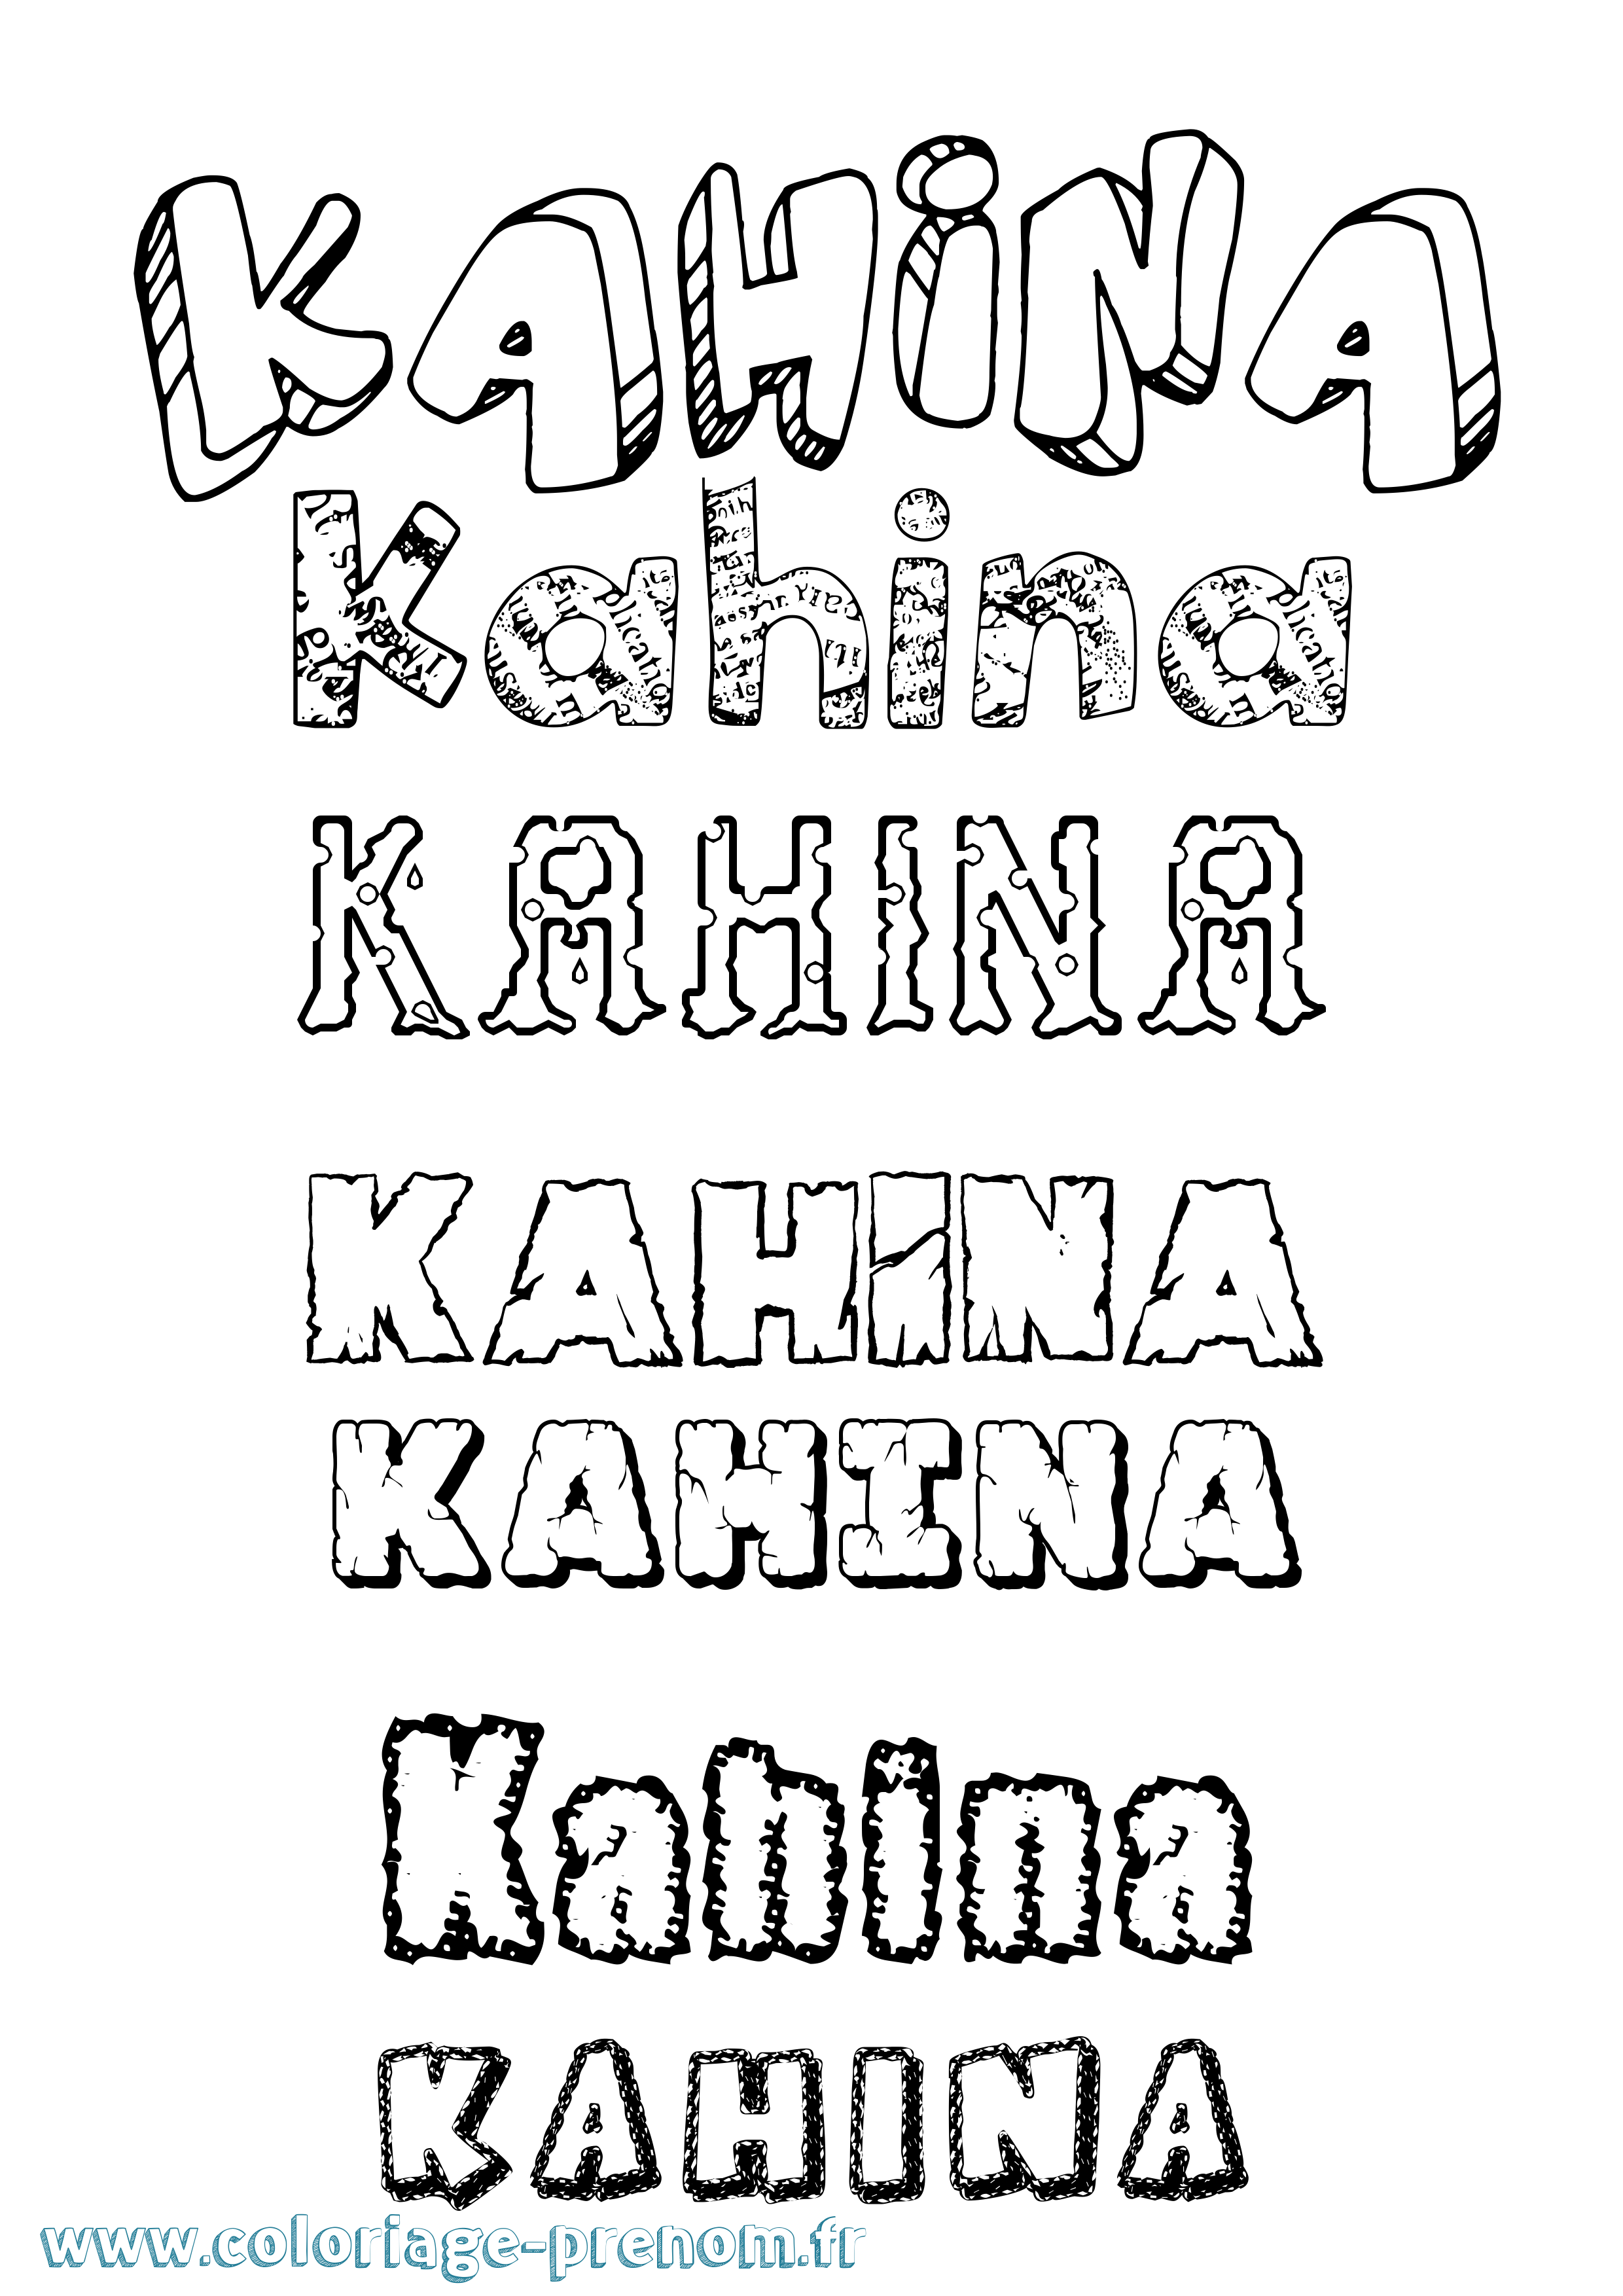 Coloriage prénom Kahina